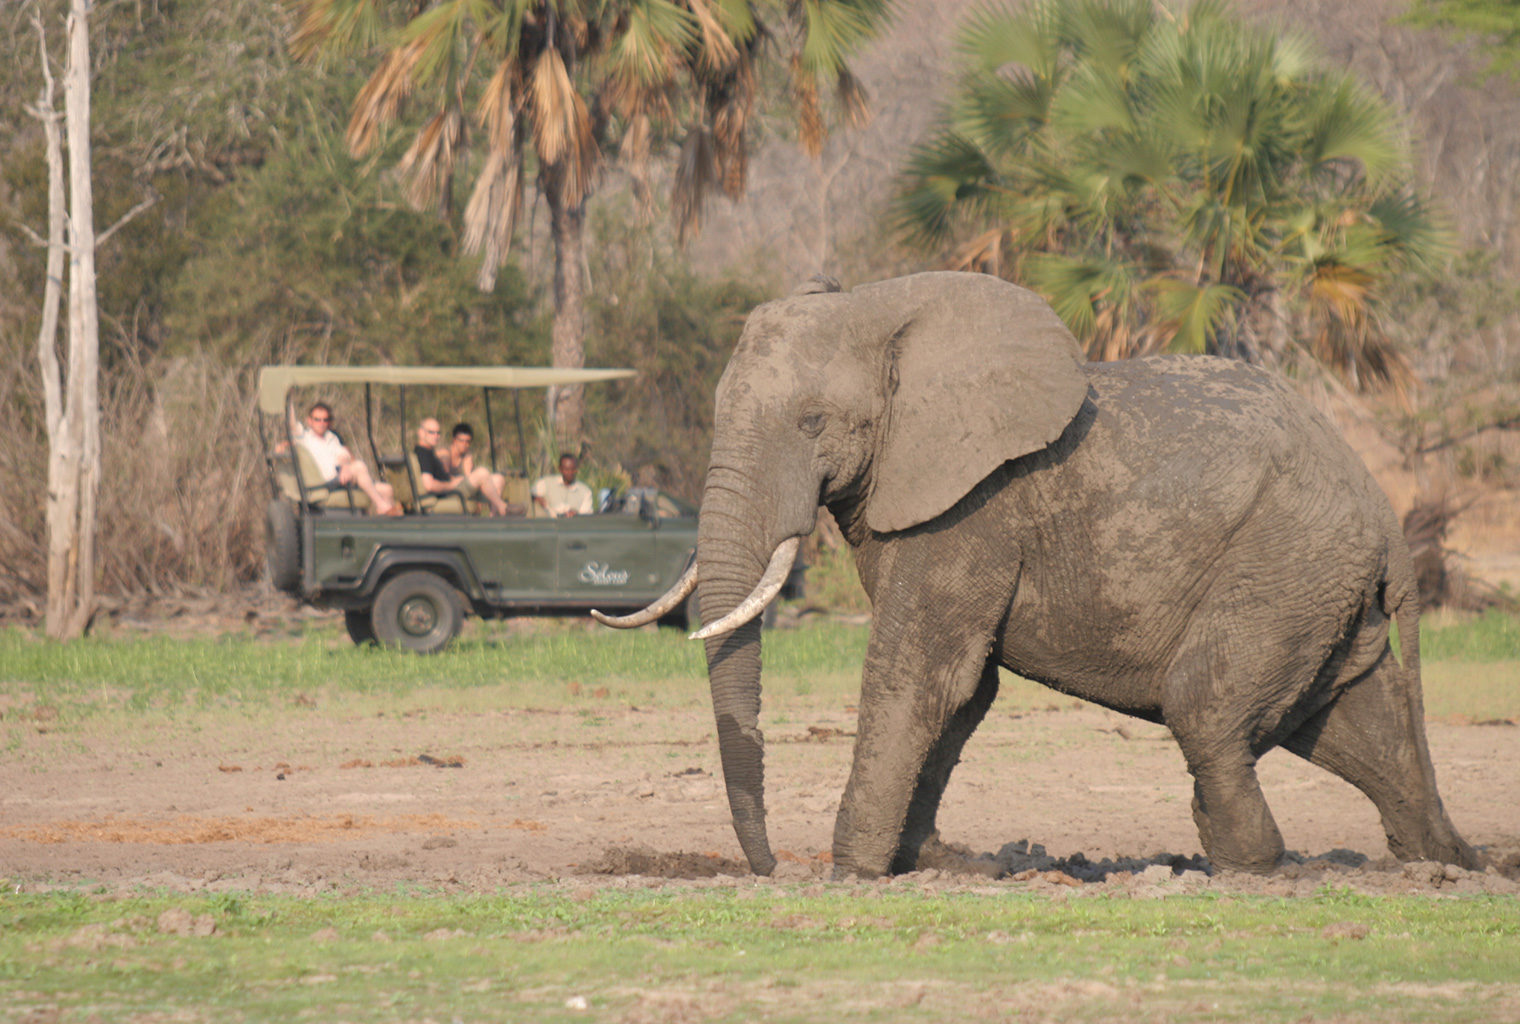 Tanzania-Siwandu-Wildlife-Elephant